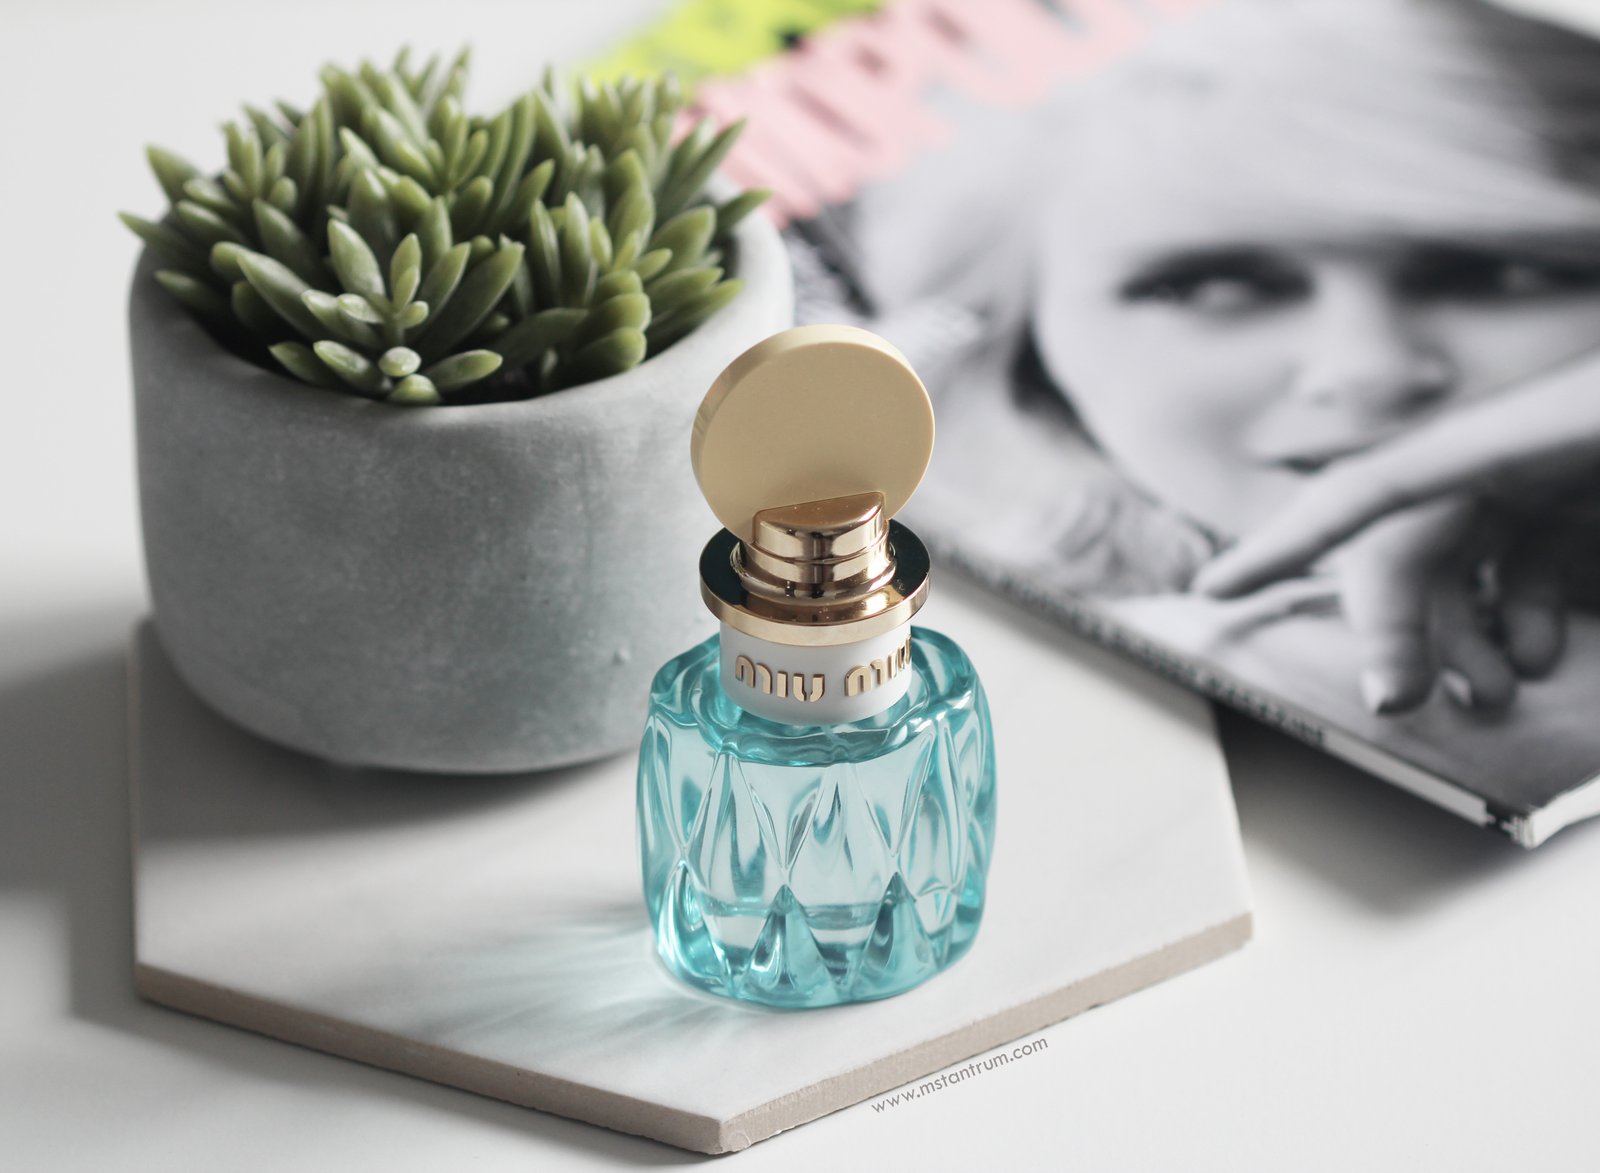 Miu Miu L'eau Bleue Eau de Parfum review